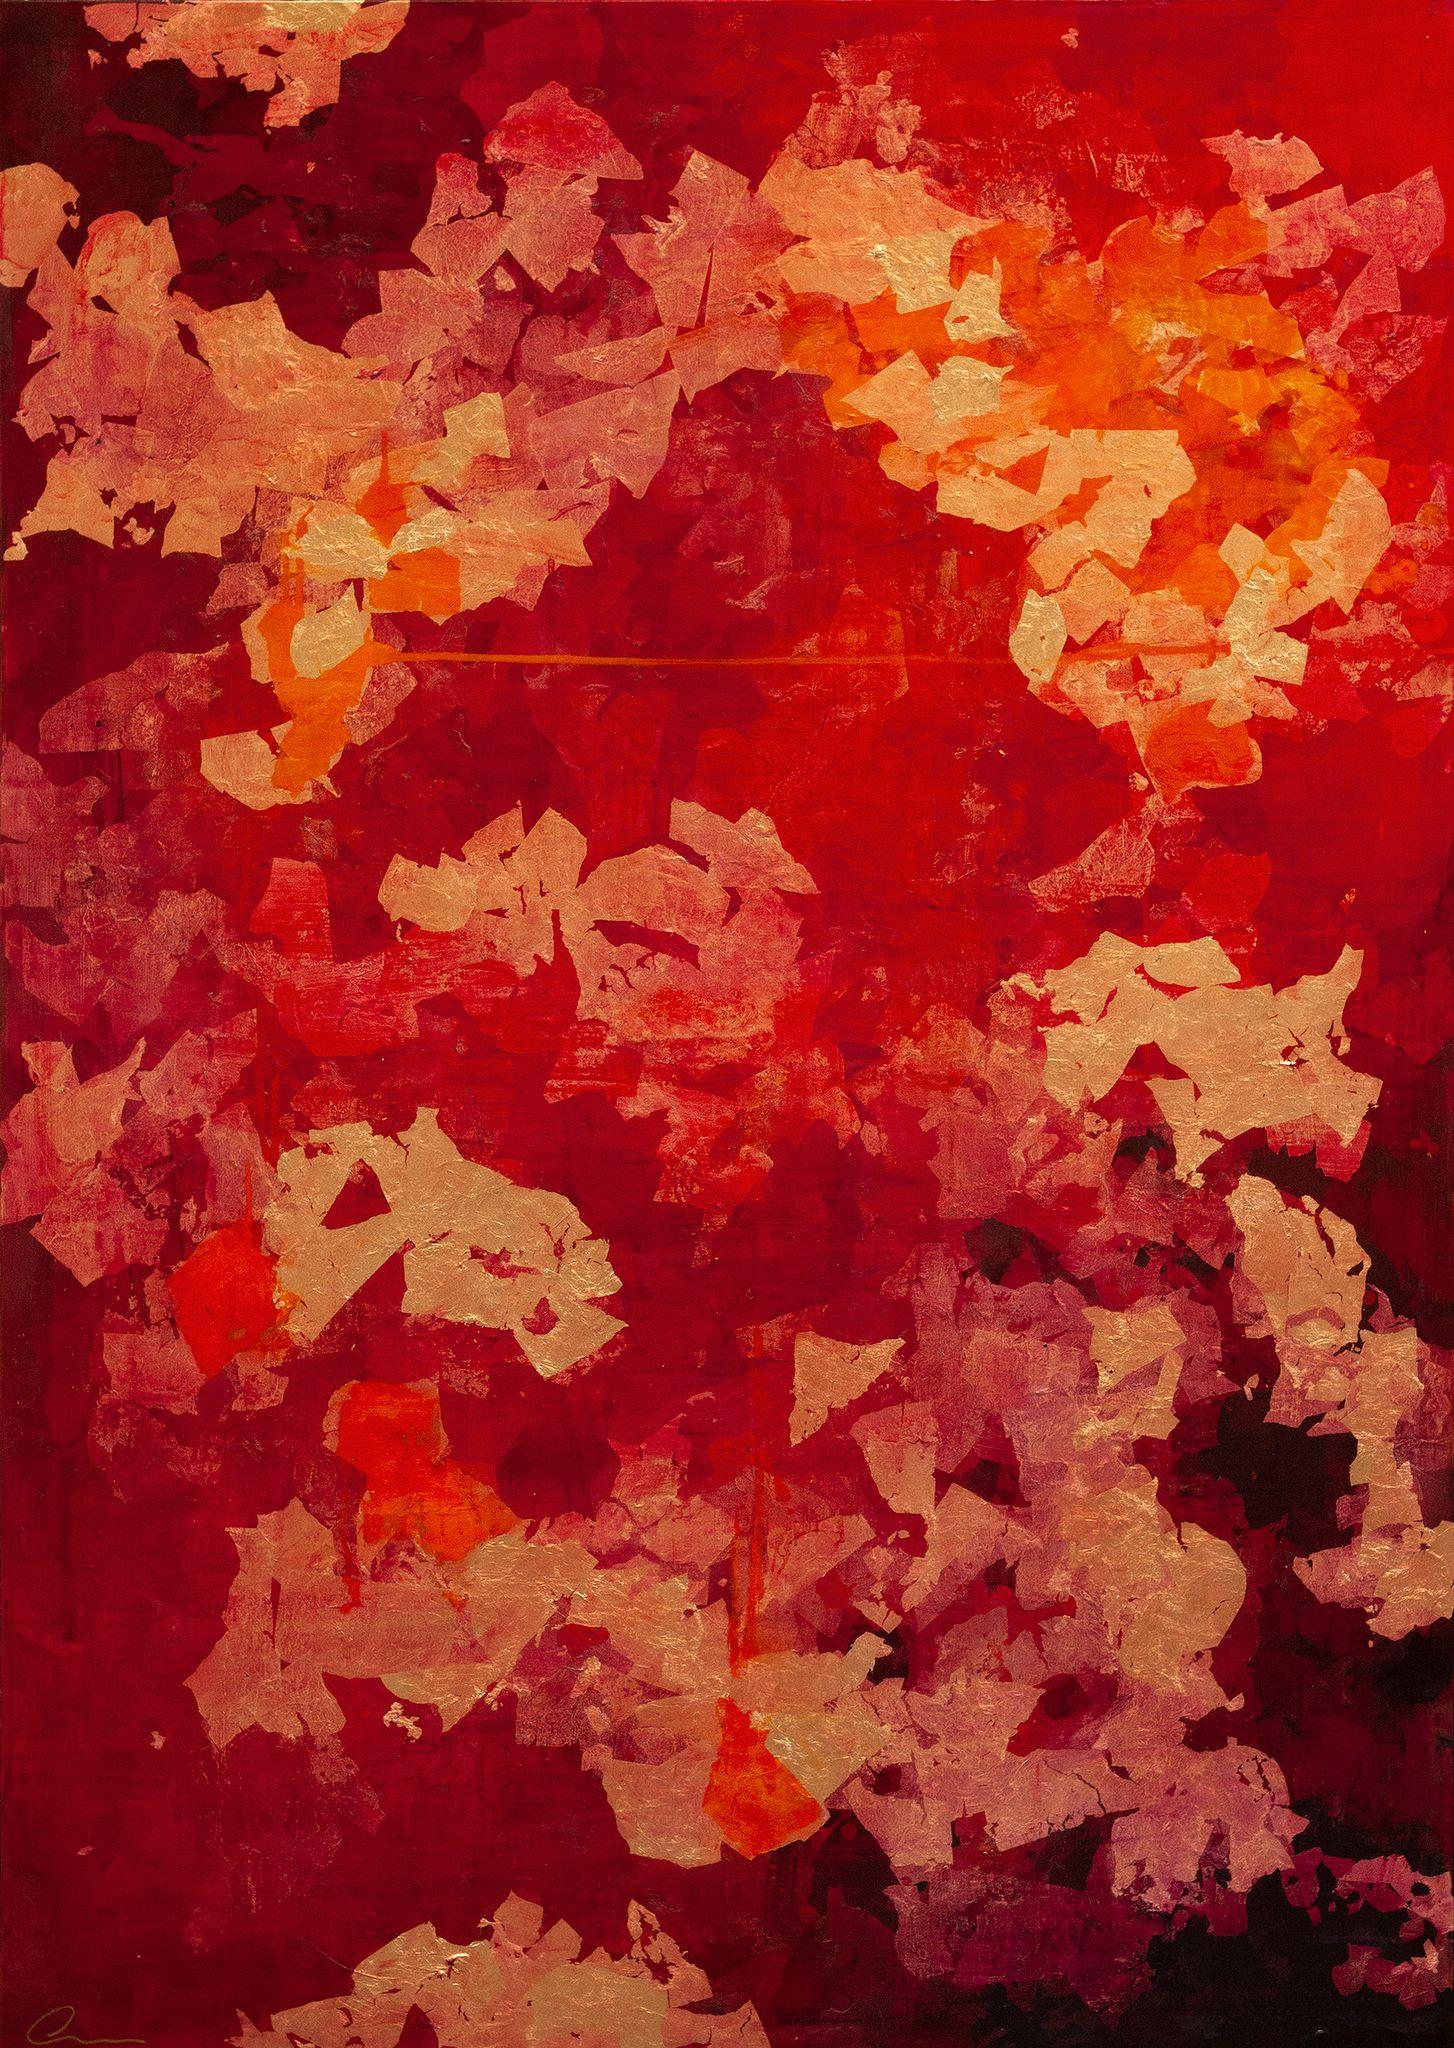 Peinture abstraite « Exhale » du 21e siècle, contemporaine, feuille d'or - Mixed Media Art de Chelsea Davine